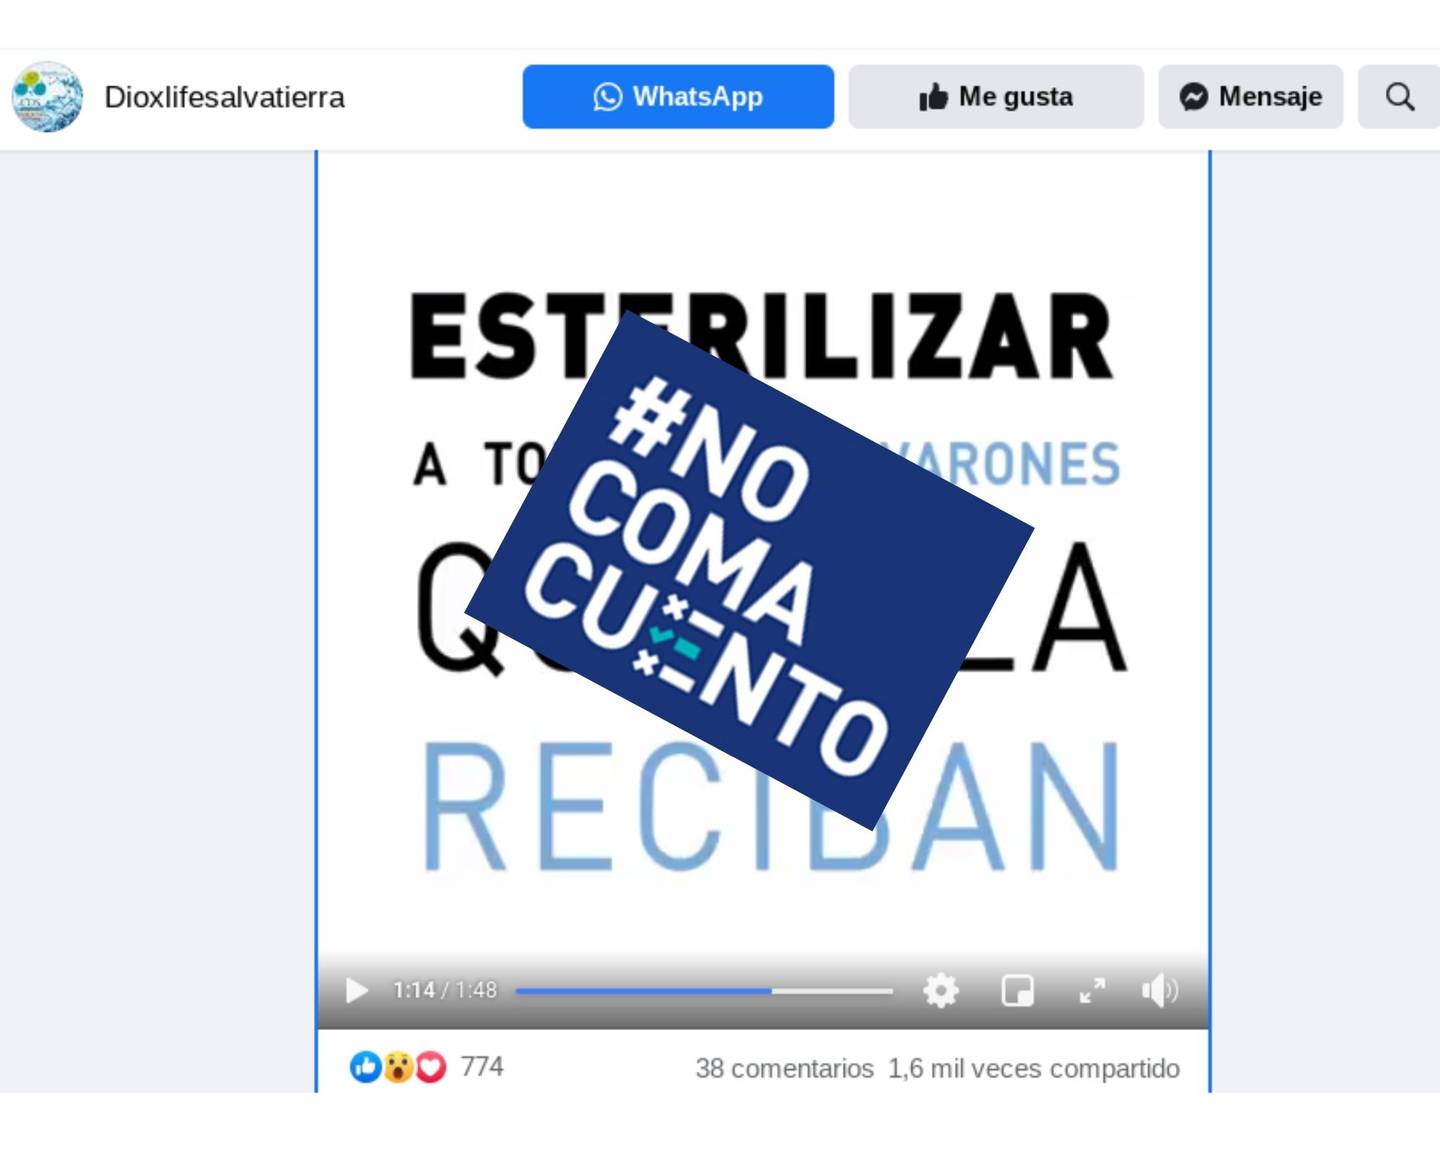 En un video de Facebook, la médica argentina Chinda Brandolino asegura que las vacunas contra la covid-19 dejarán estériles a todos los hombres quienes las reciban y afirma que estas son "parte aberrante de un fraude científico”. La grabación se difunde en Costa Rica.